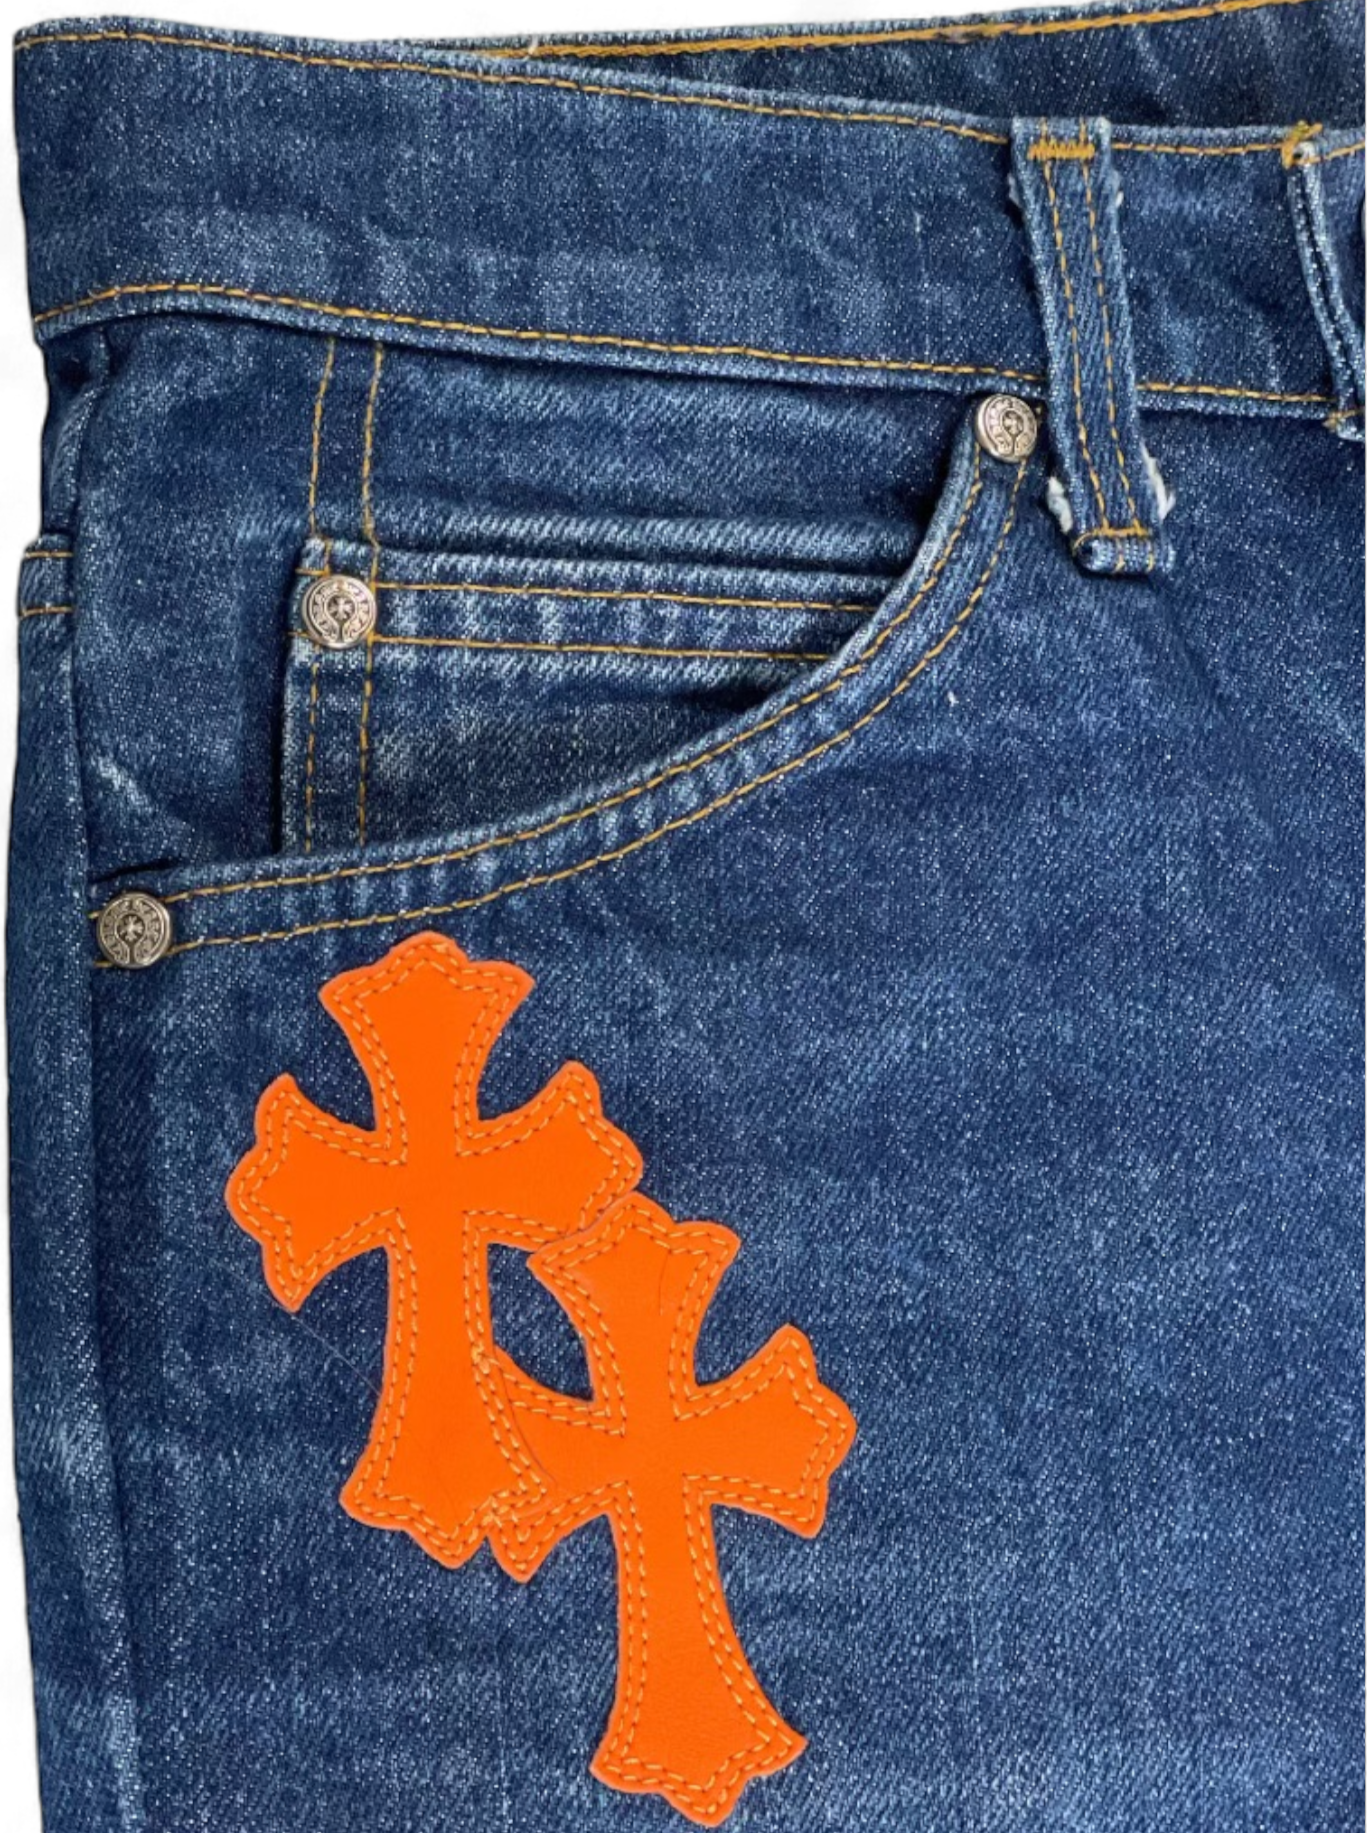 Chrome Hearts 1/1 Art Basel Exclusive Orange Cross Patch Levi’s Denim Jeans